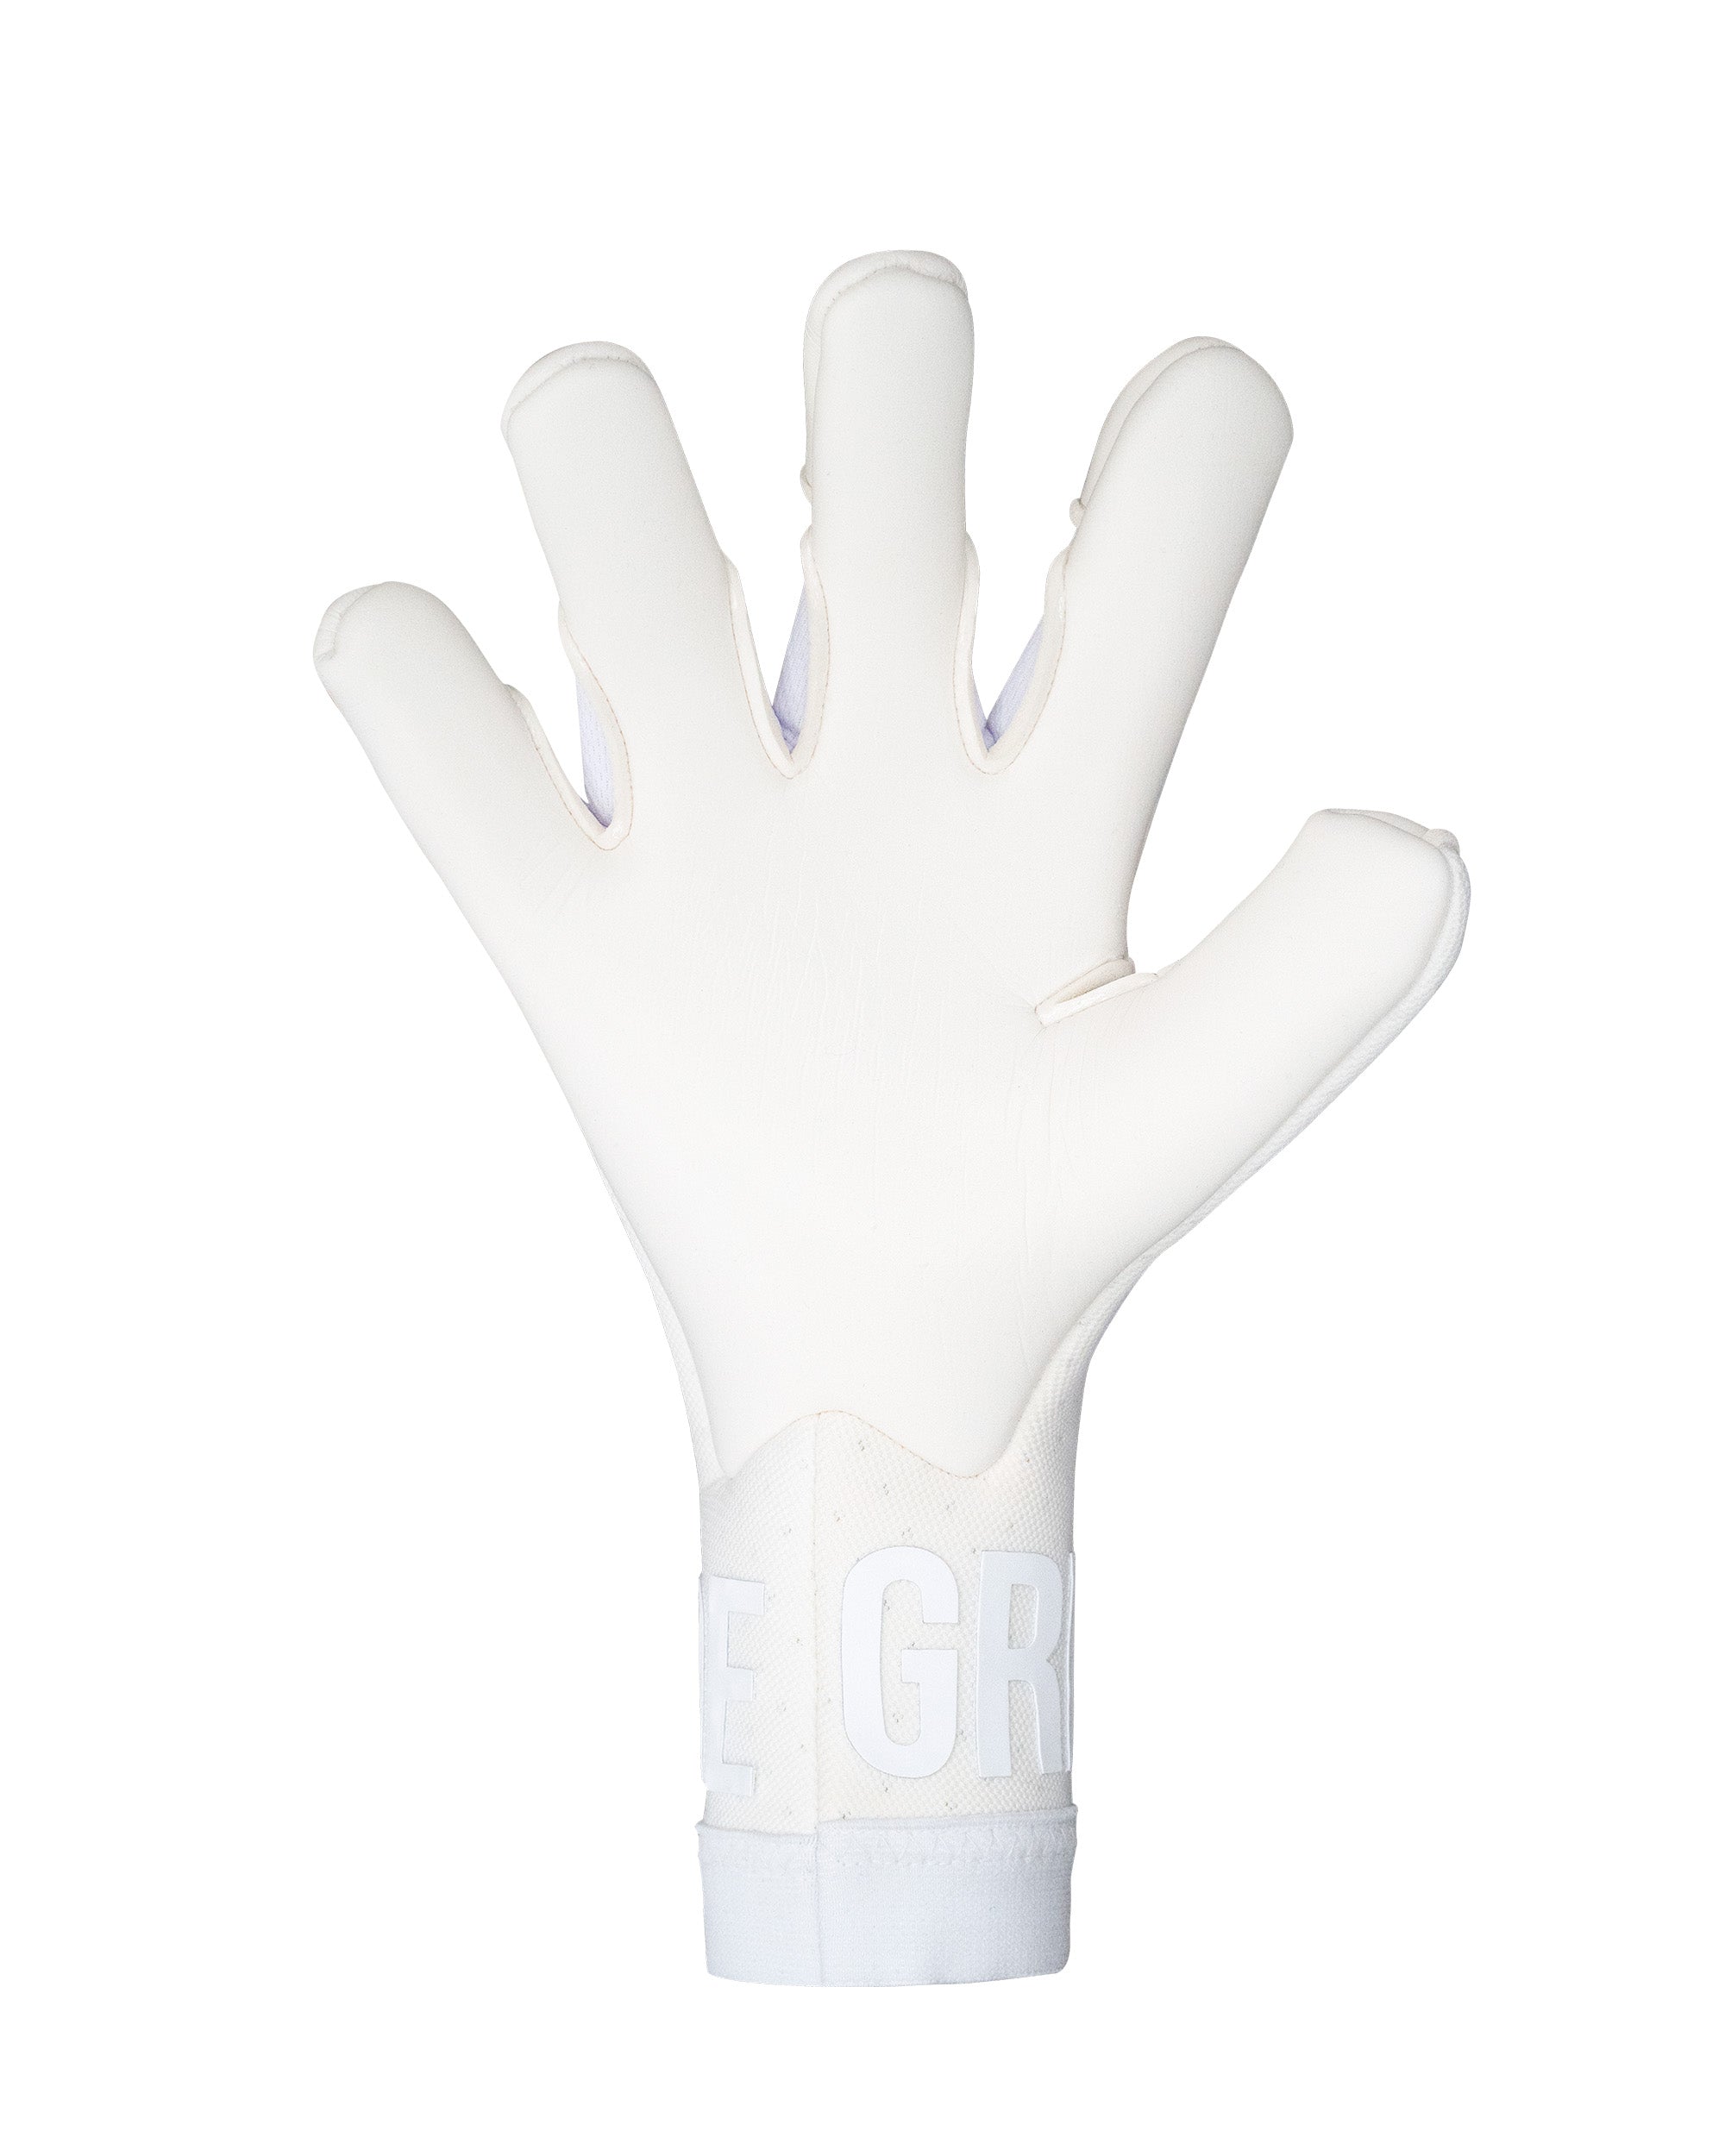 Gripmode Goalkeeping Get The Grip Air Whiteout Fingertip